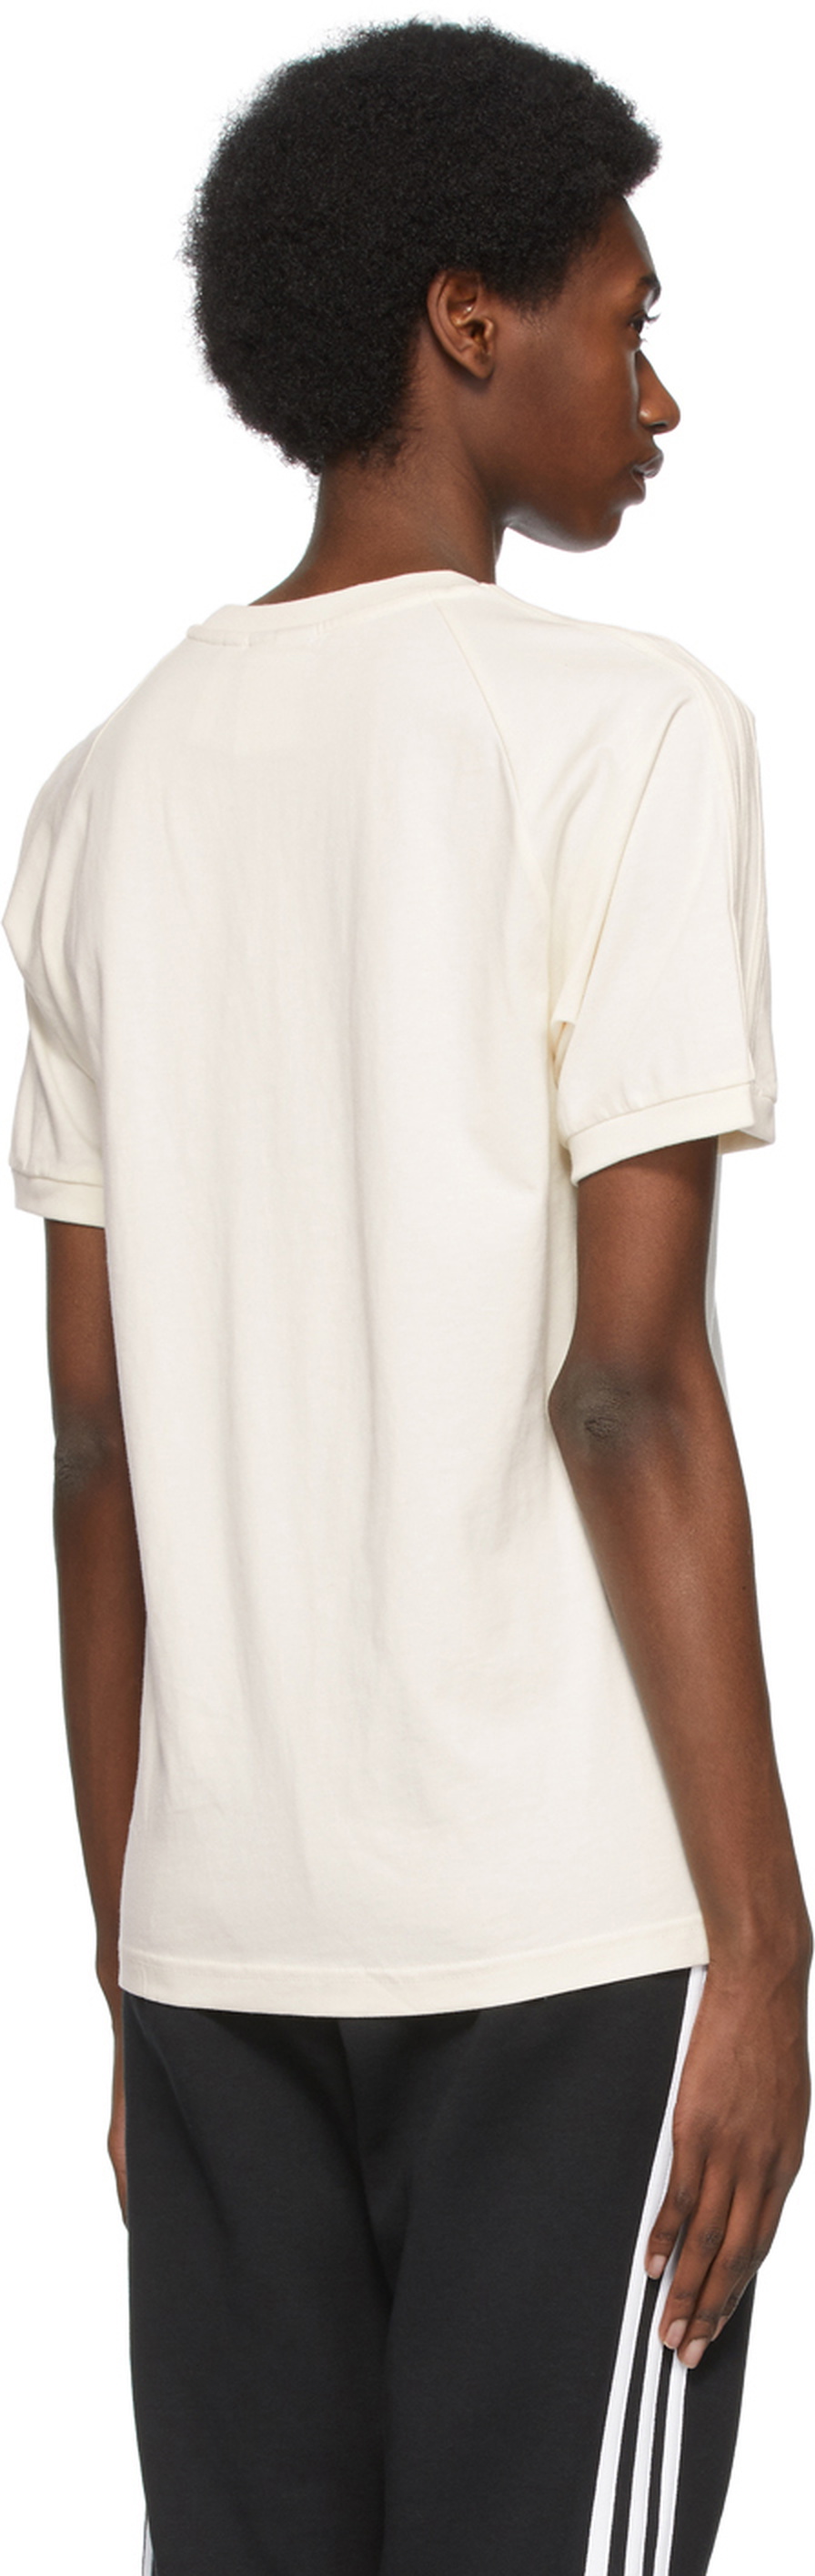 adidas No-Dye adidas Adicolor T-Shirt Off-White Originals 3-Stripes Originals